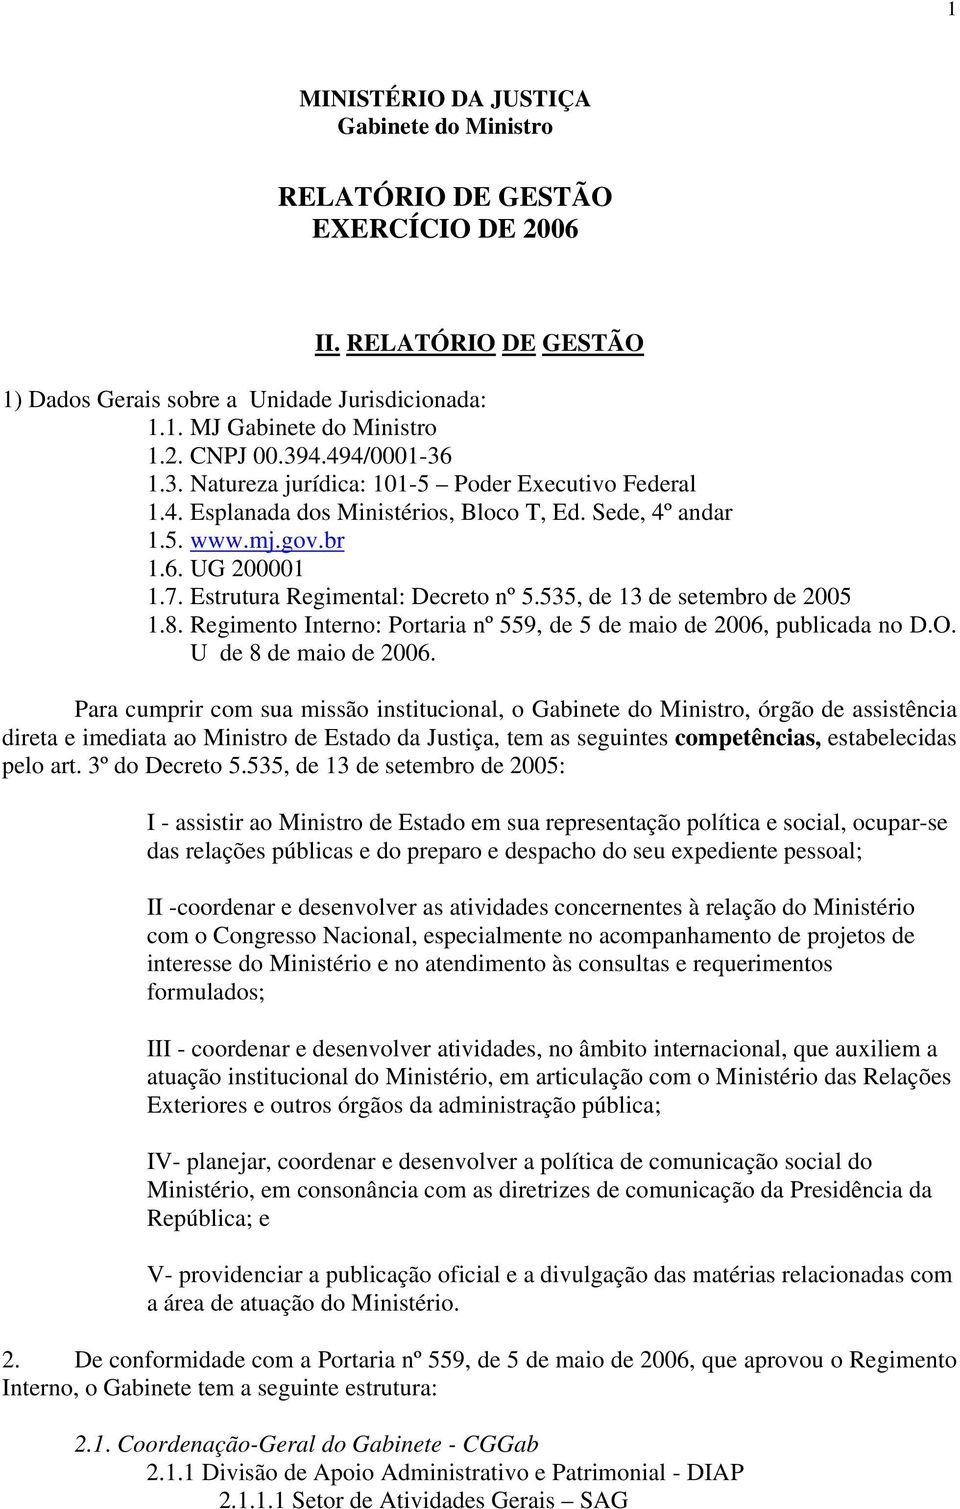 Estrutura Regimental: Decreto nº 5.535, de 13 de setembro de 2005 1.8. Regimento Interno: Portaria nº 559, de 5 de maio de 2006, publicada no D.O. U de 8 de maio de 2006.